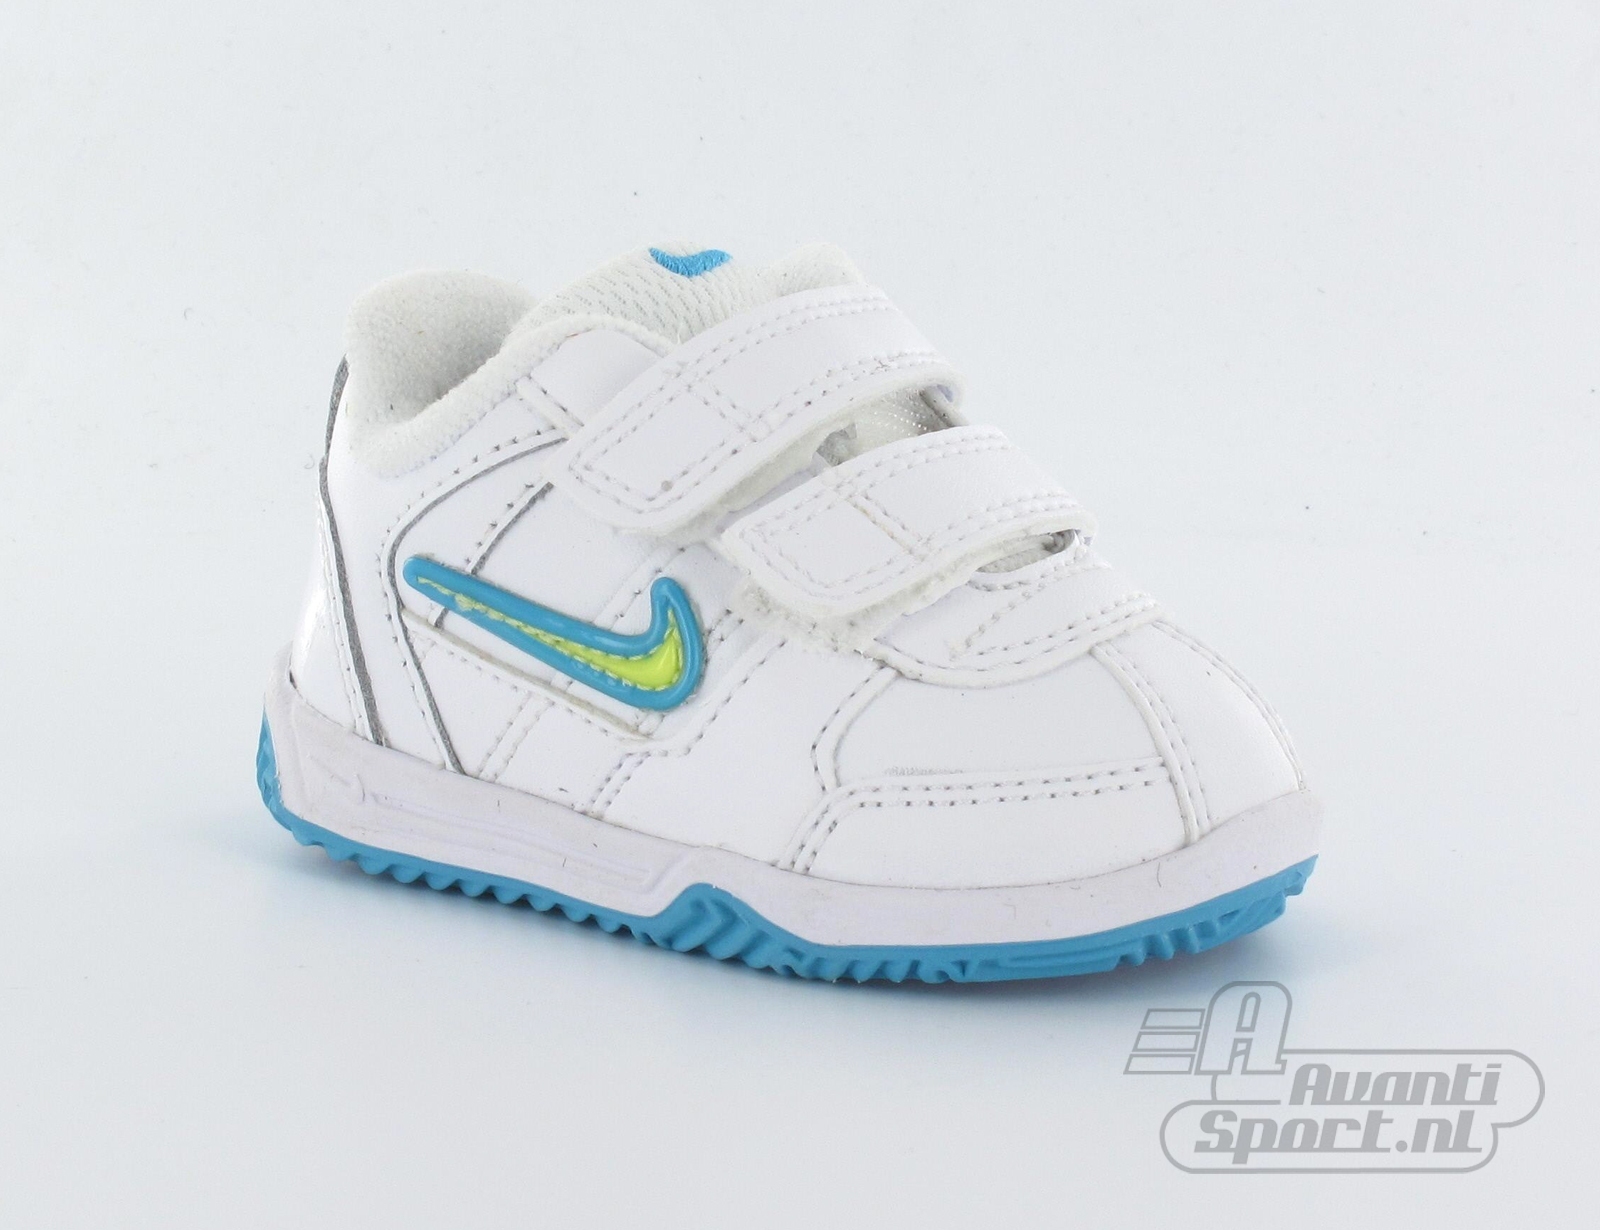 Avantisport - Nike - Lykin 09 - Nike Kinderschoenen